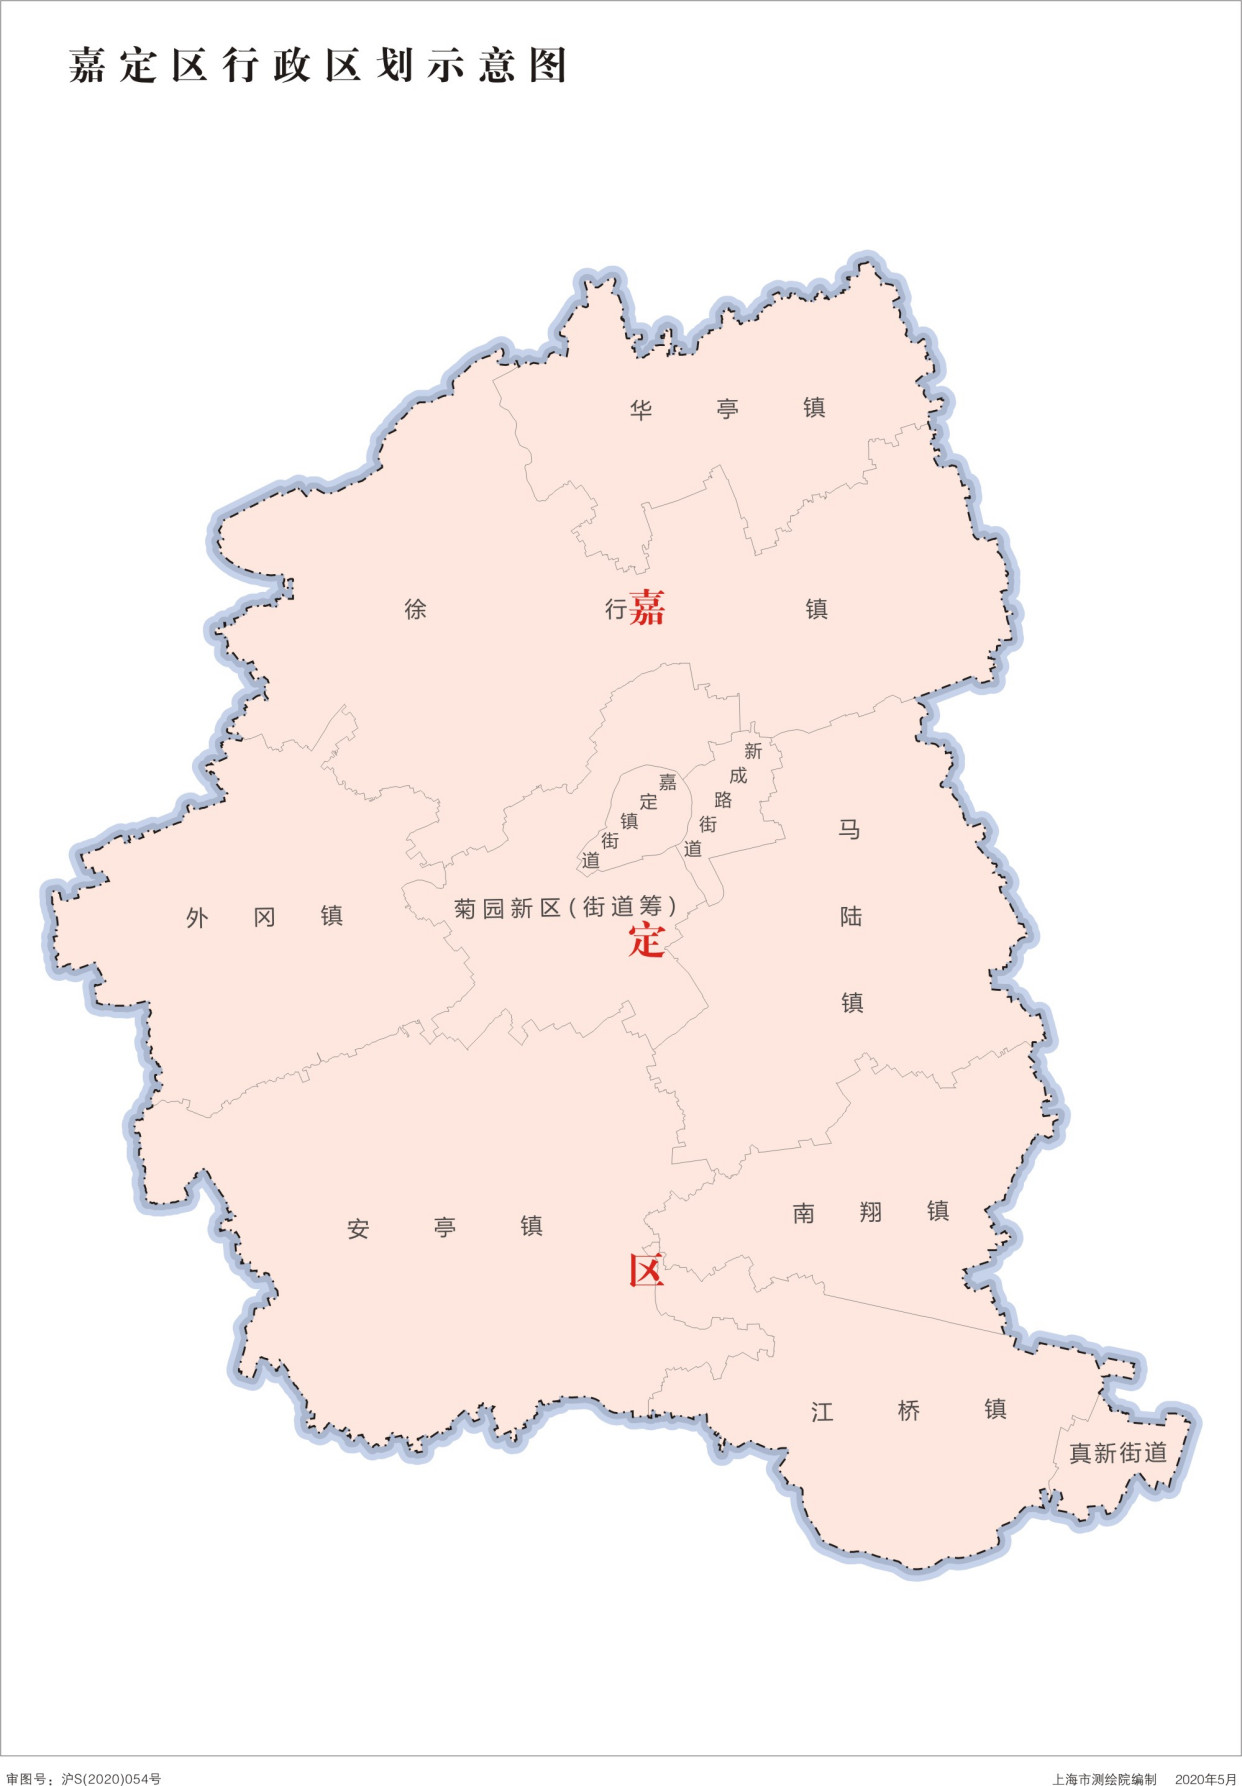 中华人民共和国-上海市行政区划地图